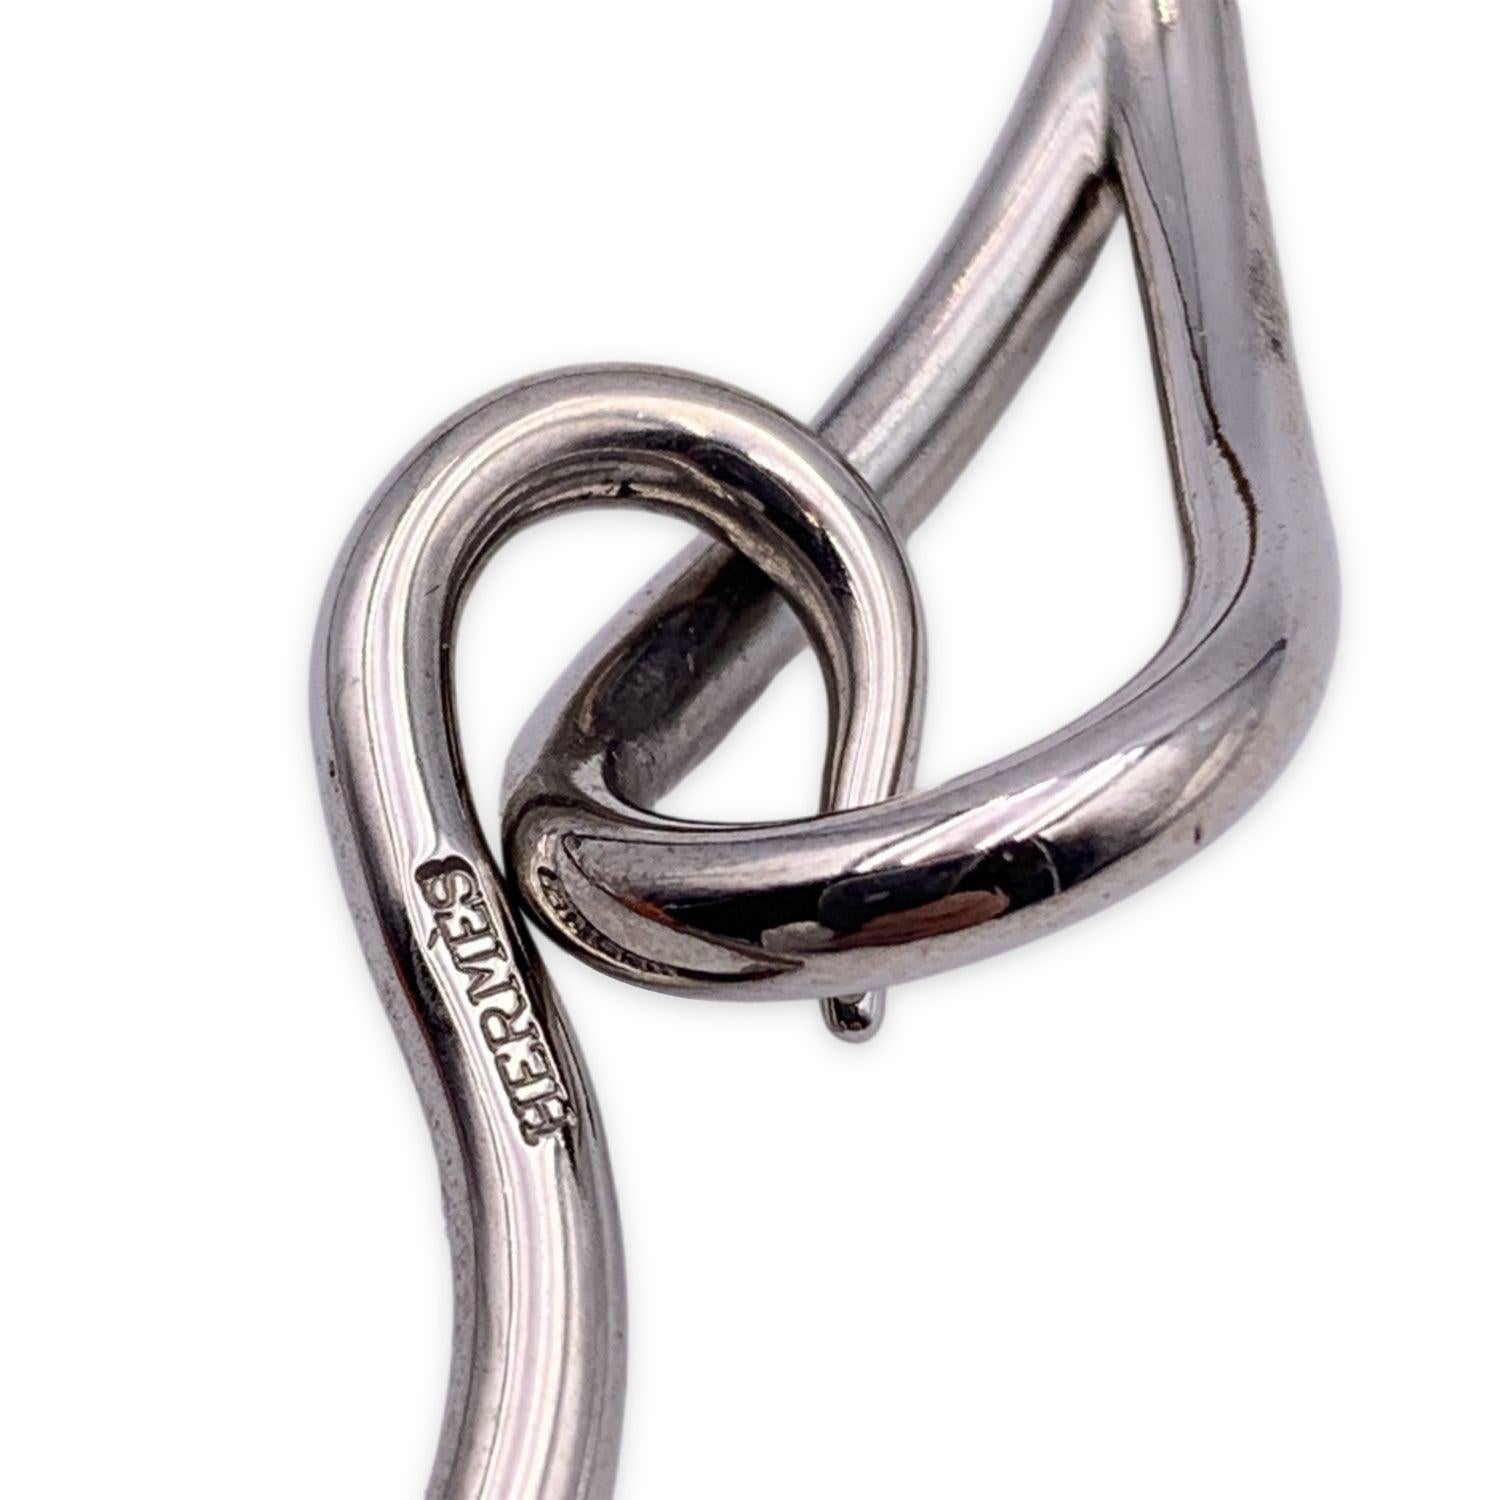  Hermes - Bracelet double tour en cuir tanné - Crochet géant en métal argenté Pour femmes 